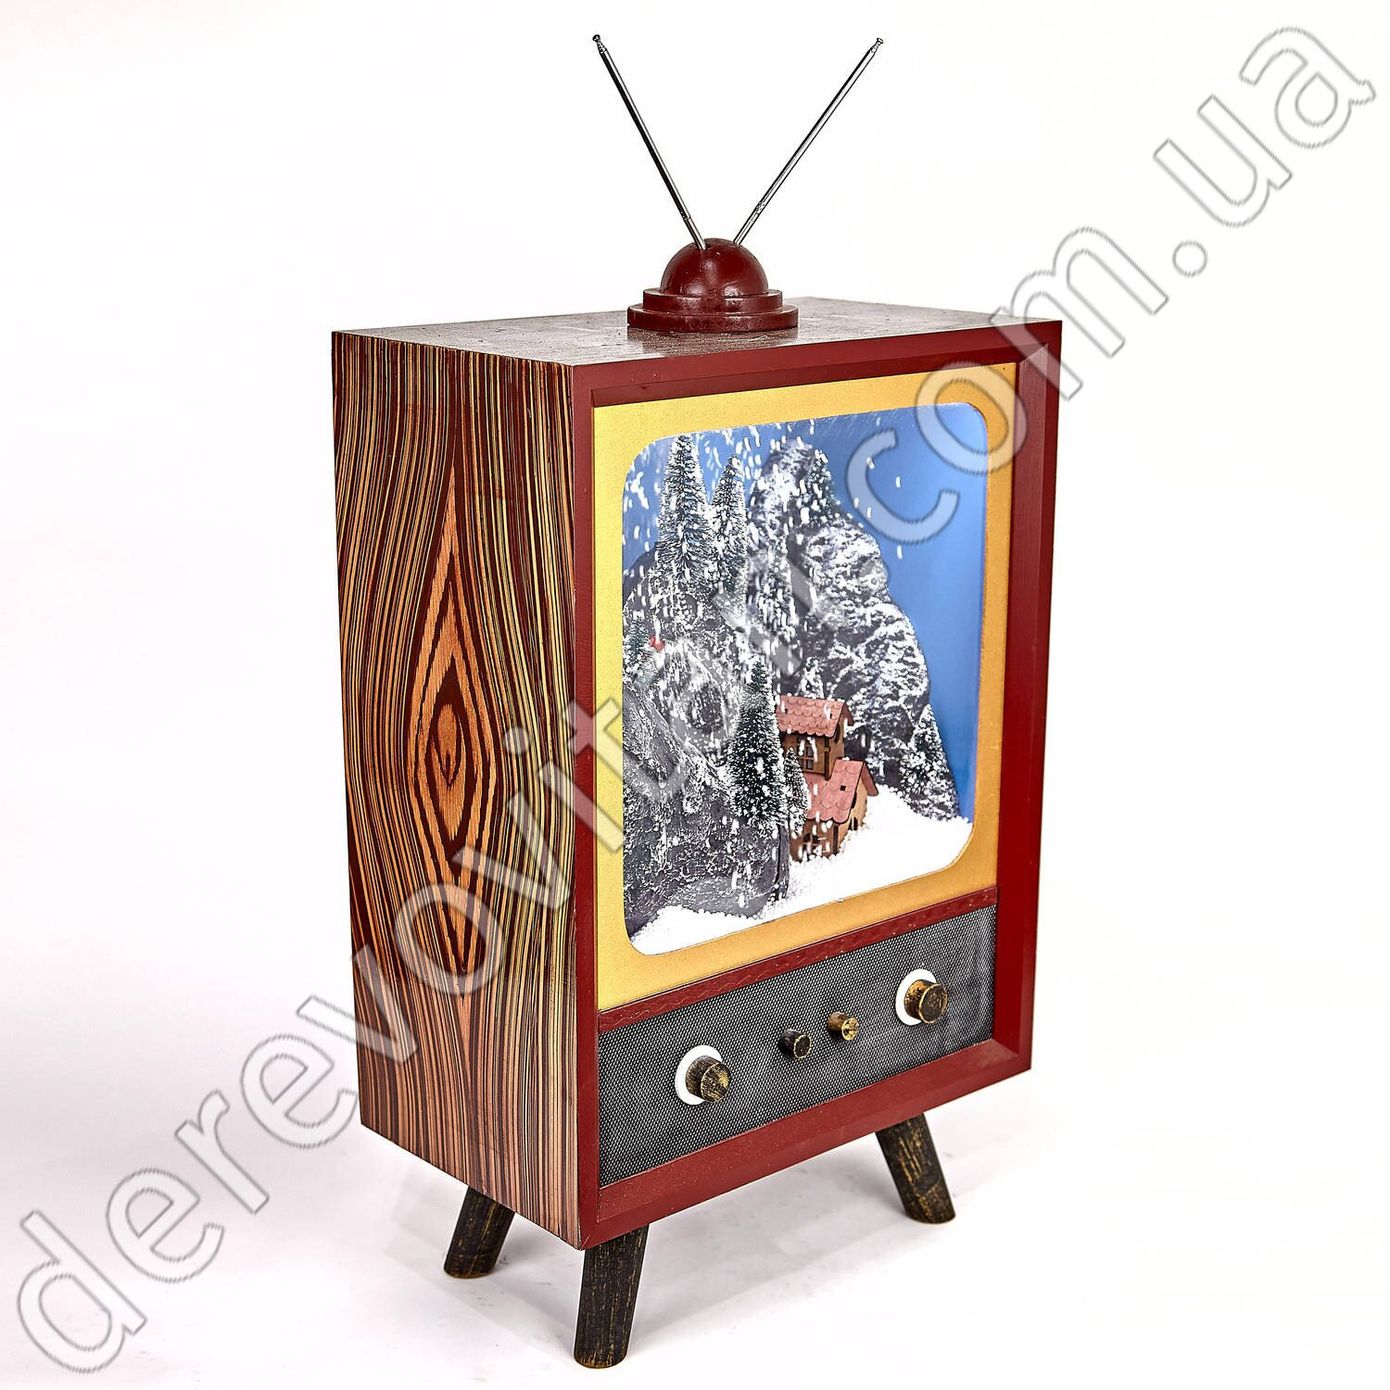 Новогодний музыкальный декор "Телевизор", 40×60 см